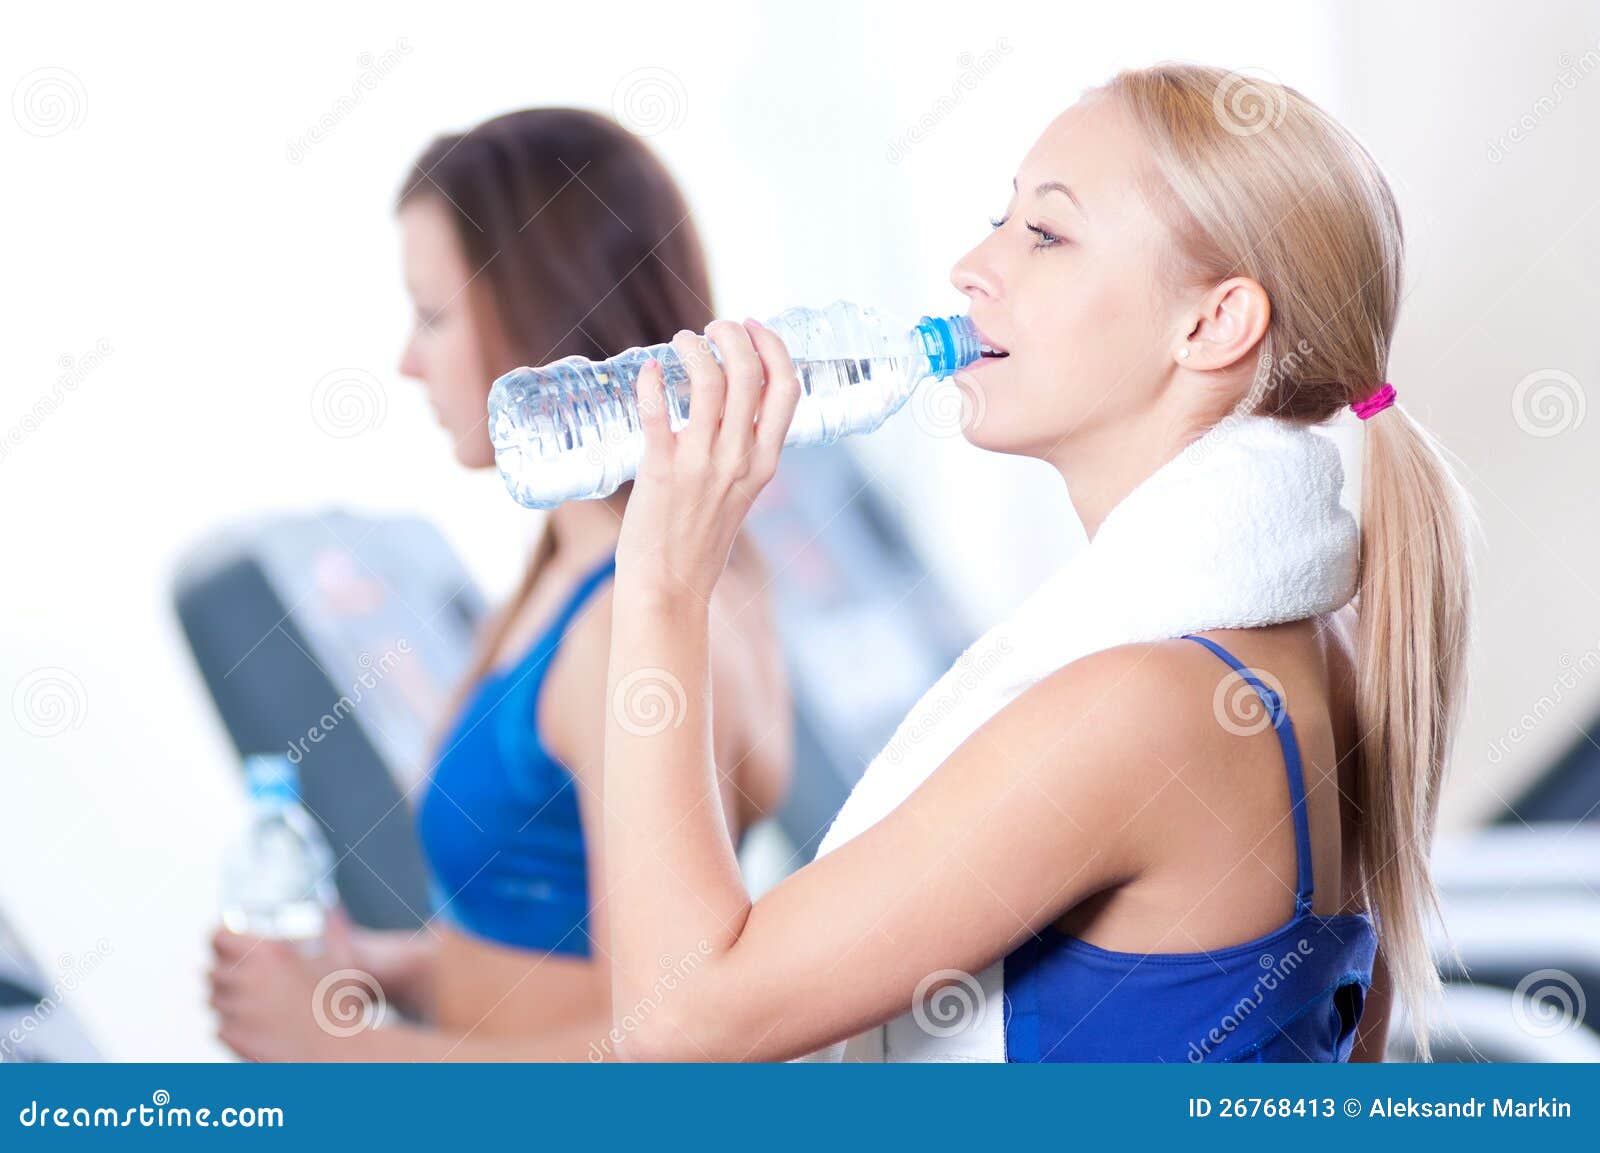 Просв тил б нзин зал пить. Питьевая вода в спортивном зале. Питьевая вода в спортивном зале ребенок. В спортзале пьет из бутылки. Девушка в спортзале пьет лимонад.